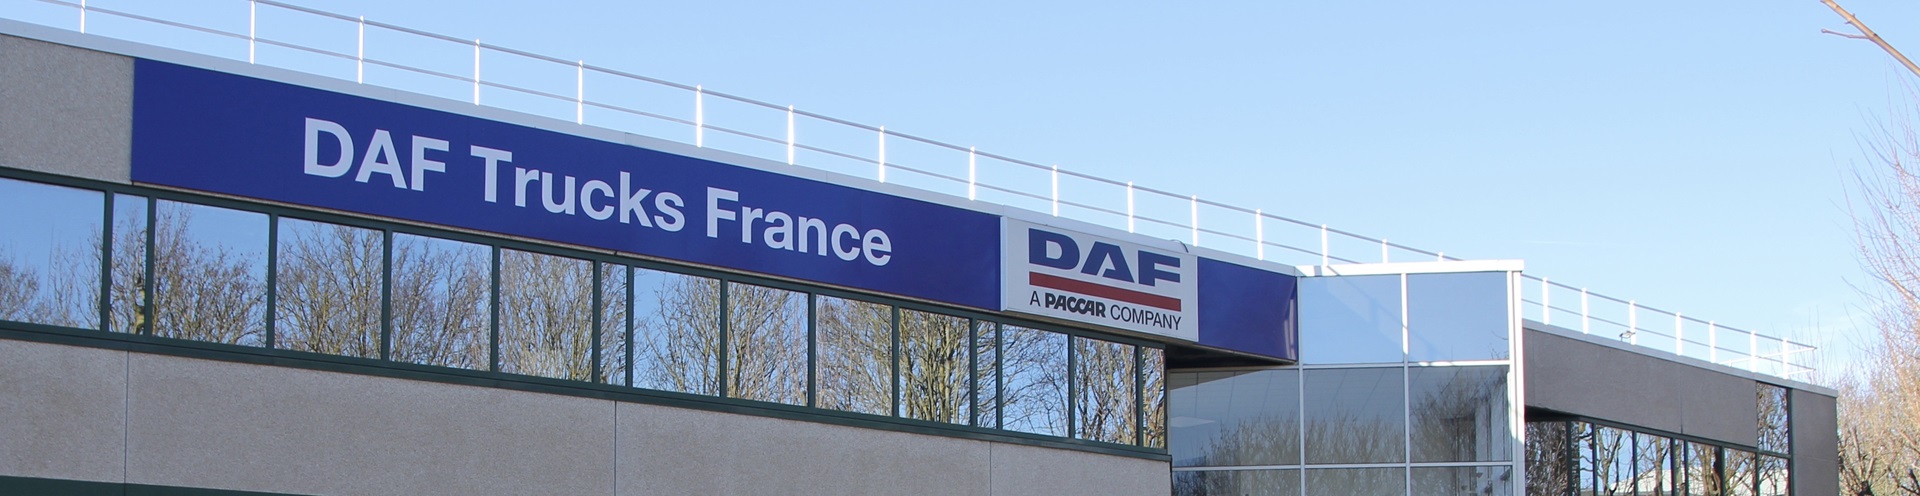 DAF-Trucks-France-corrig